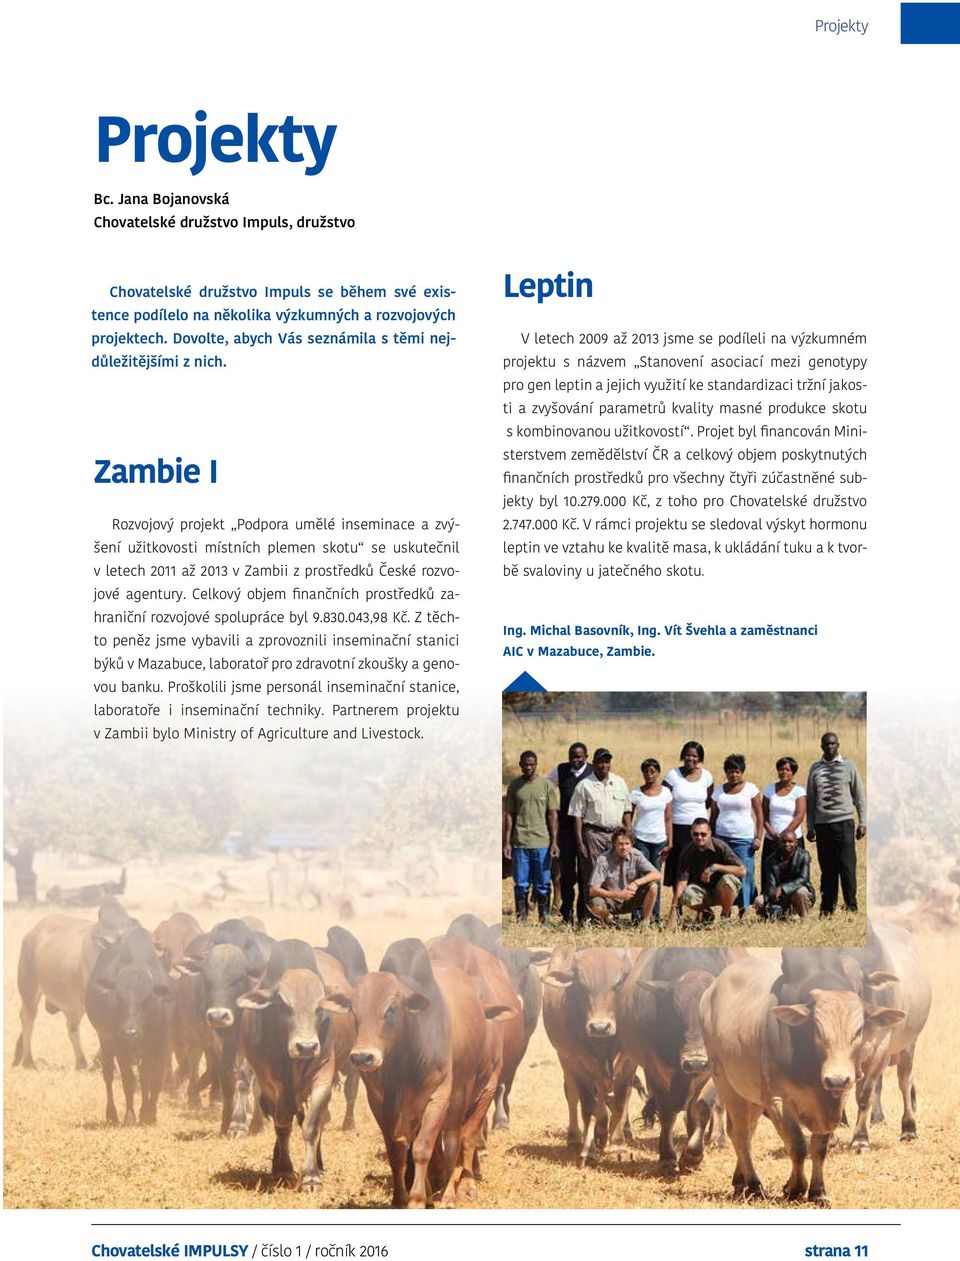 Zambie I Rozvojový projekt Podpora umělé inseminace a zvýšení užitkovosti místních plemen skotu se uskutečnil v letech 2011 až 2013 v Zambii z prostředků České rozvojové agentury.